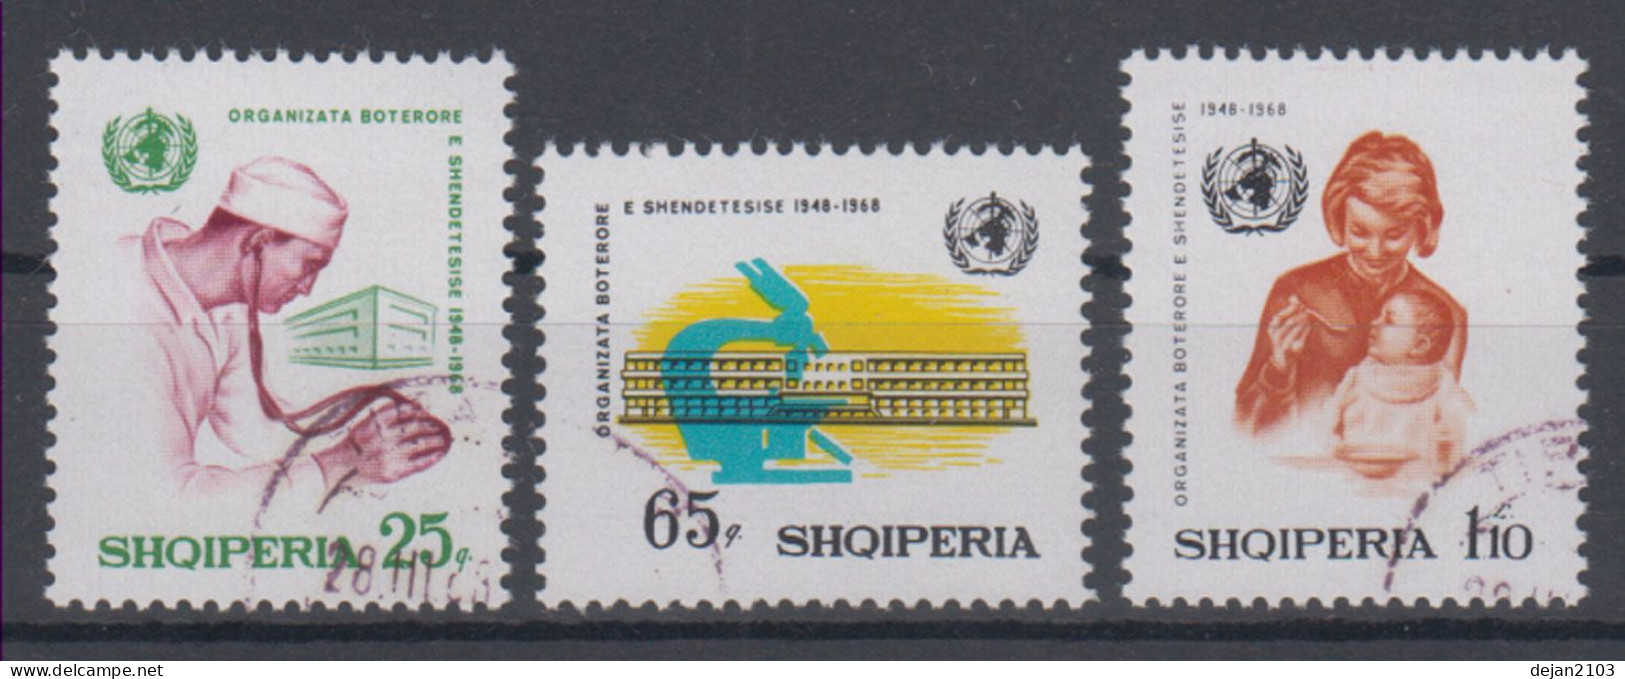 Albania Medicine 1968 USED - Albanie